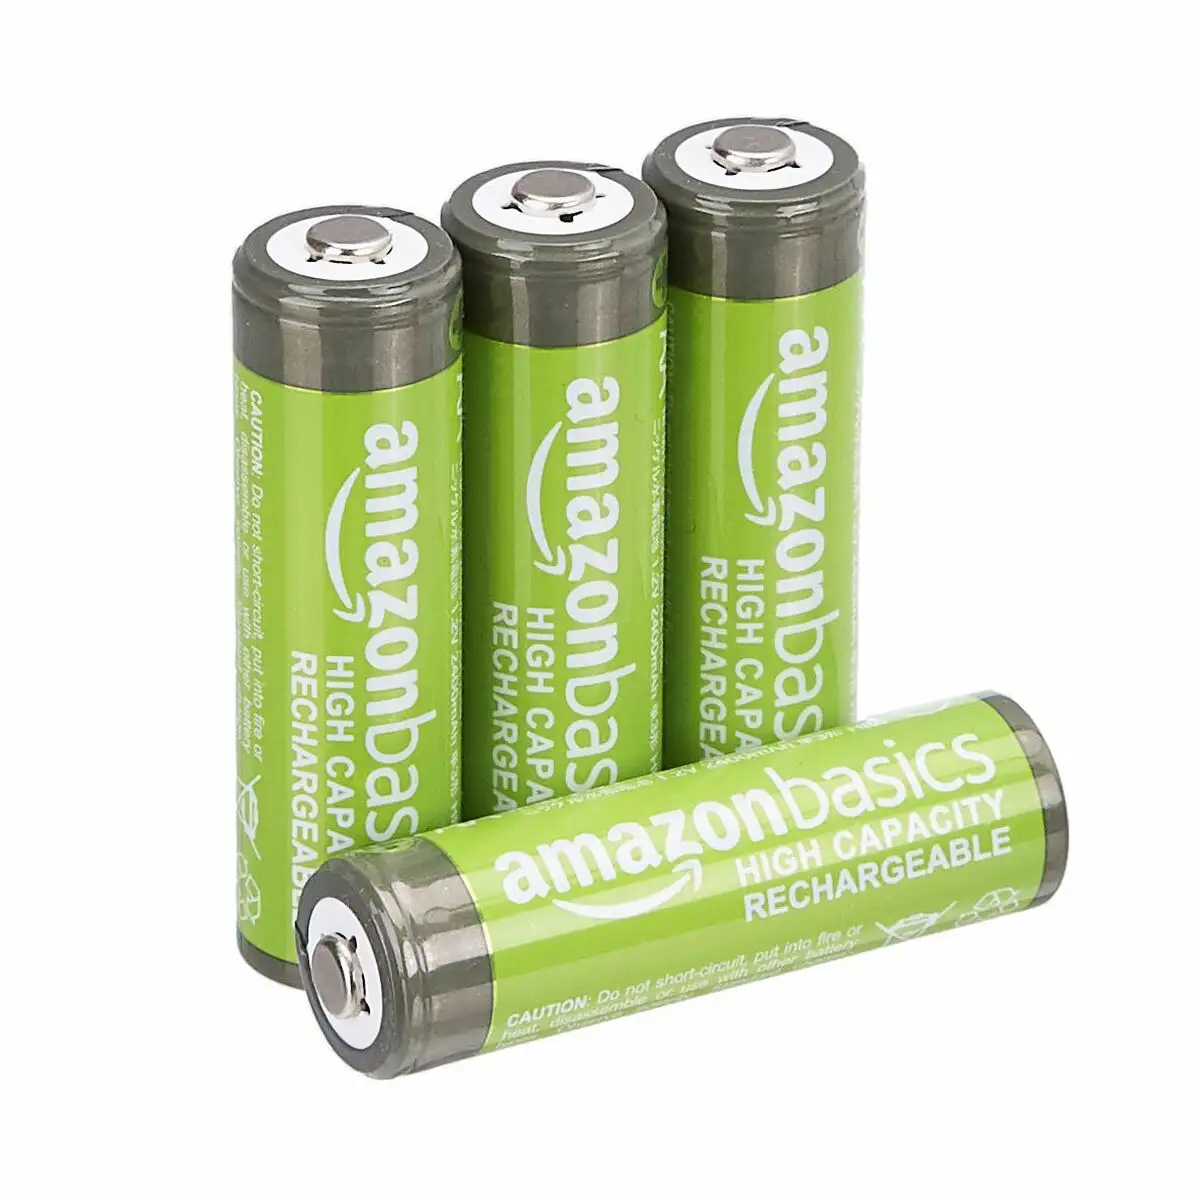 Batterie rechargeable amazon basics 240aahcb 1 2 v 4 unites reconditionne a _4585. DIAYTAR SENEGAL - Votre Destinée Shopping Personnalisée. Plongez dans notre boutique en ligne et créez votre propre expérience de shopping en choisissant parmi nos produits variés.